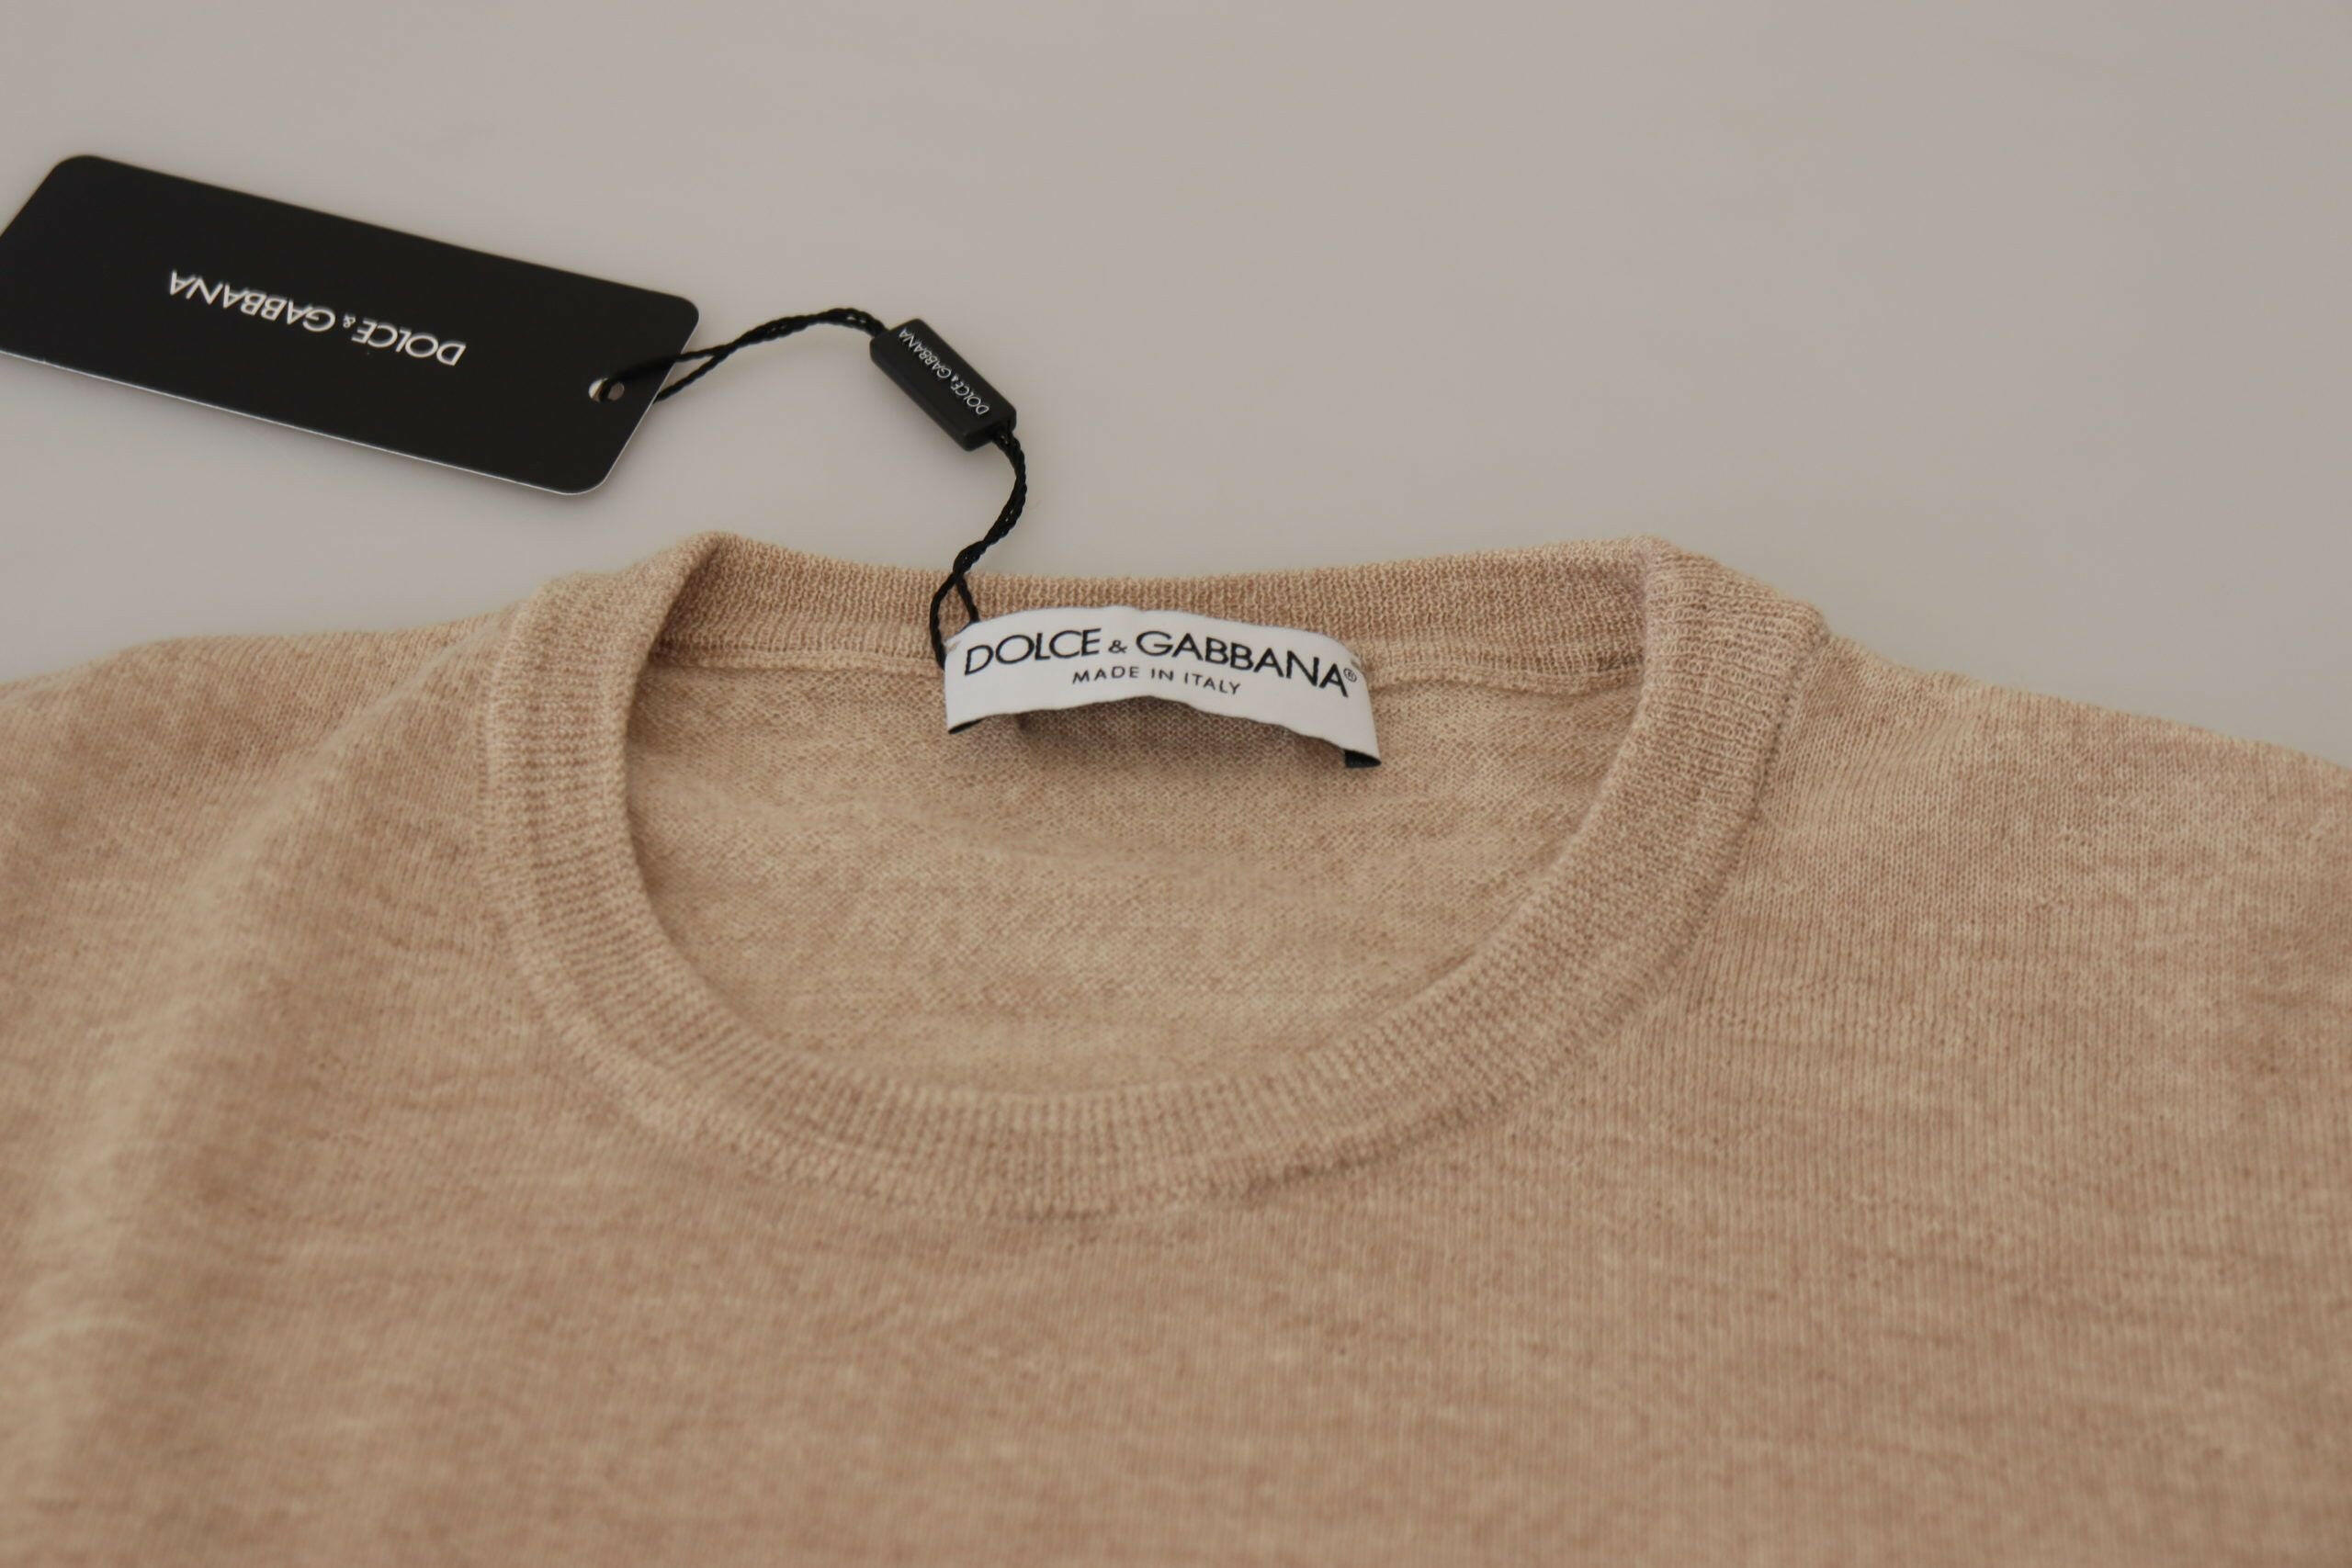 Dolce & Gabbana Beige Virgin Wool Crew Neck Pullover Sweater - GENUINE AUTHENTIC BRAND LLC  